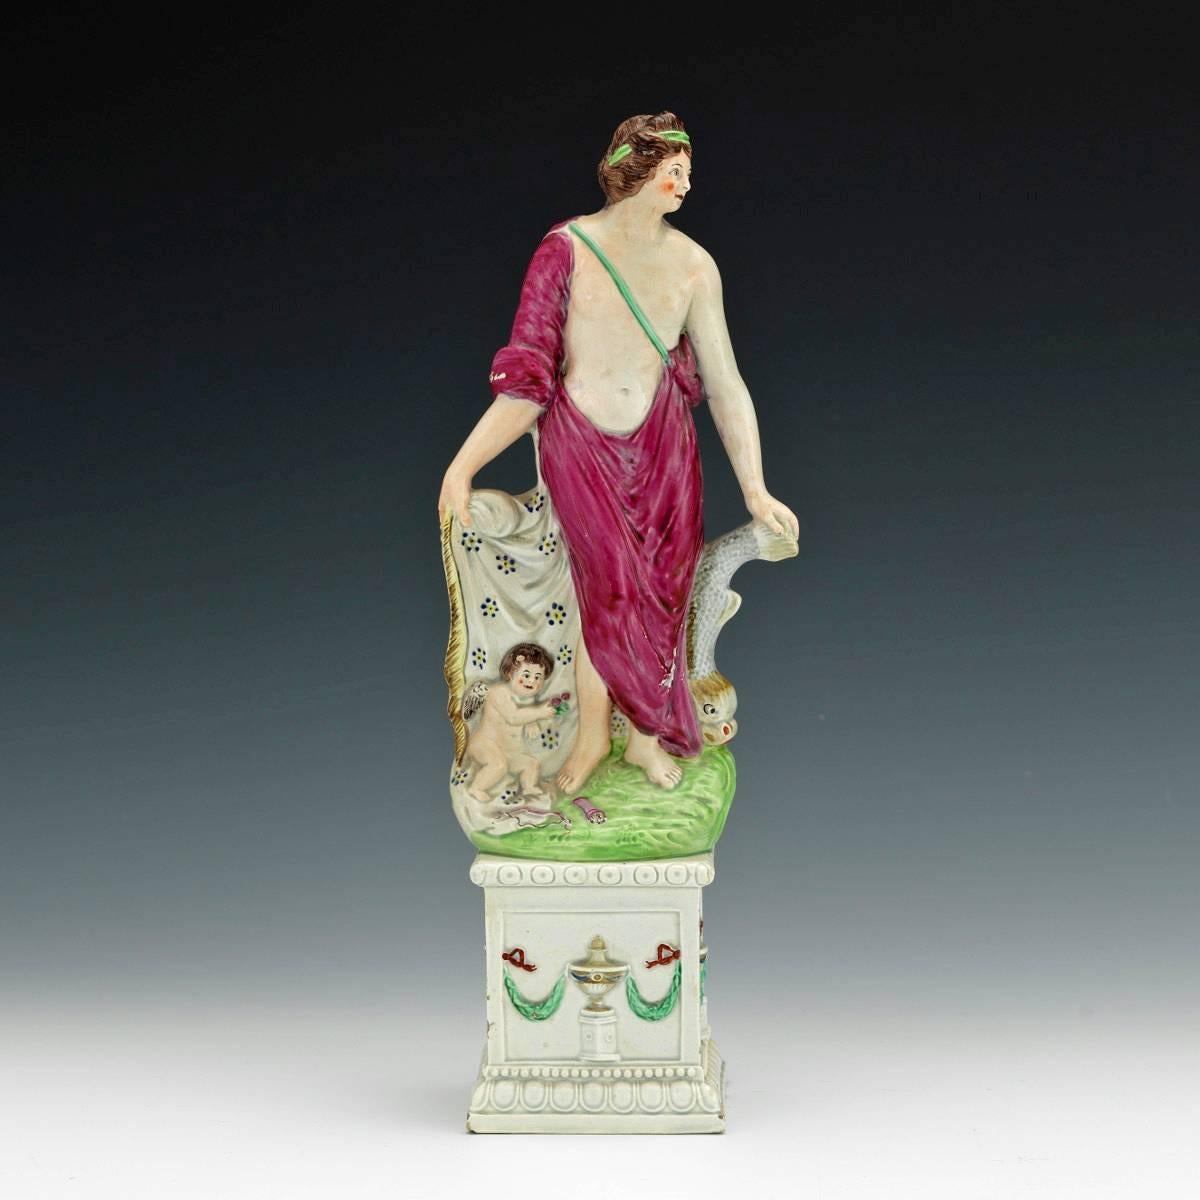 Figure d'Aphrodite et Eros en perles, figure de Vénus et Cupidon attribuée à Neale & Co,
vers 1790.

La grande figure de Vénus ou d'Aphrodite en céramique perlée du début de l'Angleterre repose sa main gauche sur un dauphin et sa main droite